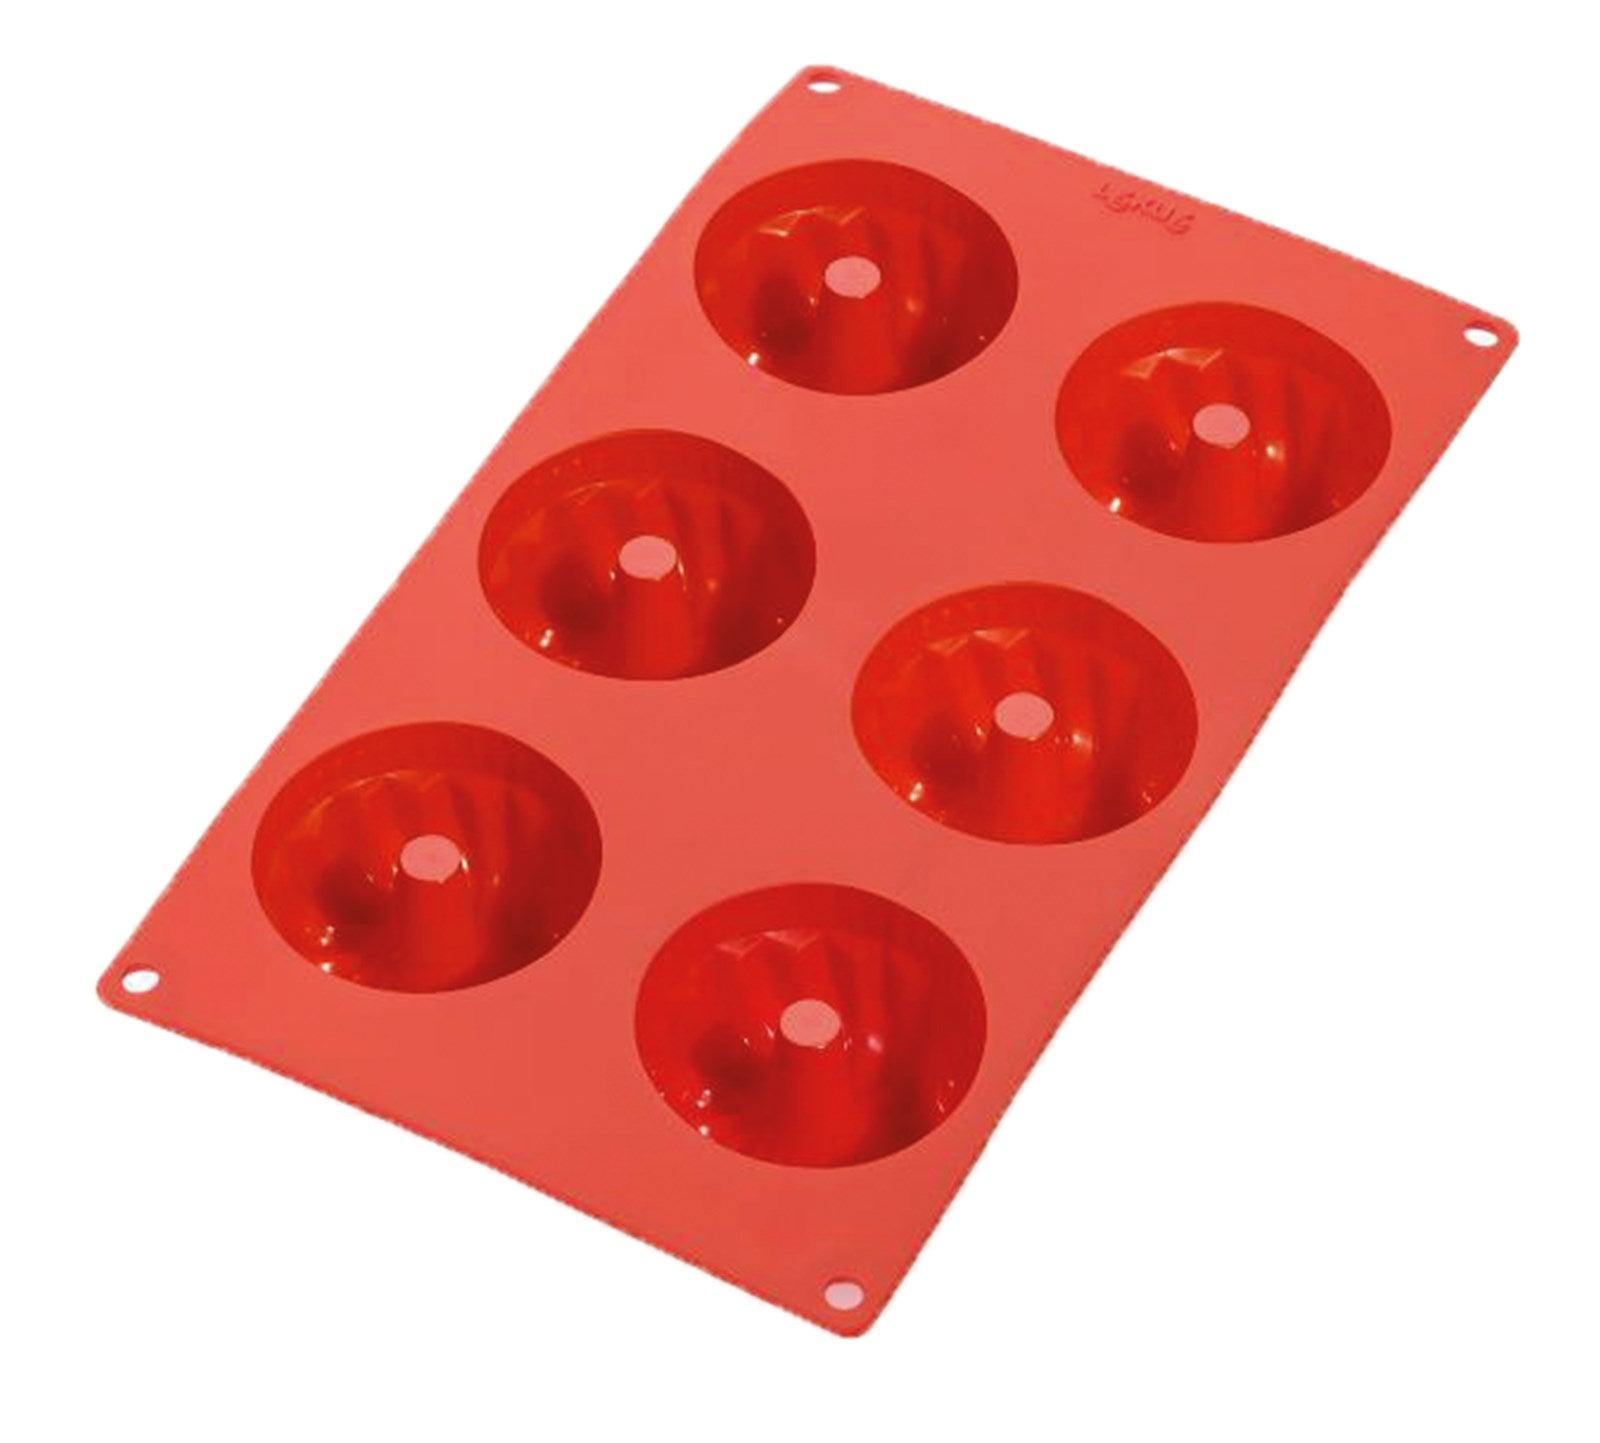 Backform 6er Gugelhopf Rot, Ø7 cm h: 3.5 cm in Rot präsentiert im Onlineshop von KAQTU Design AG. Backen ist von Lékué